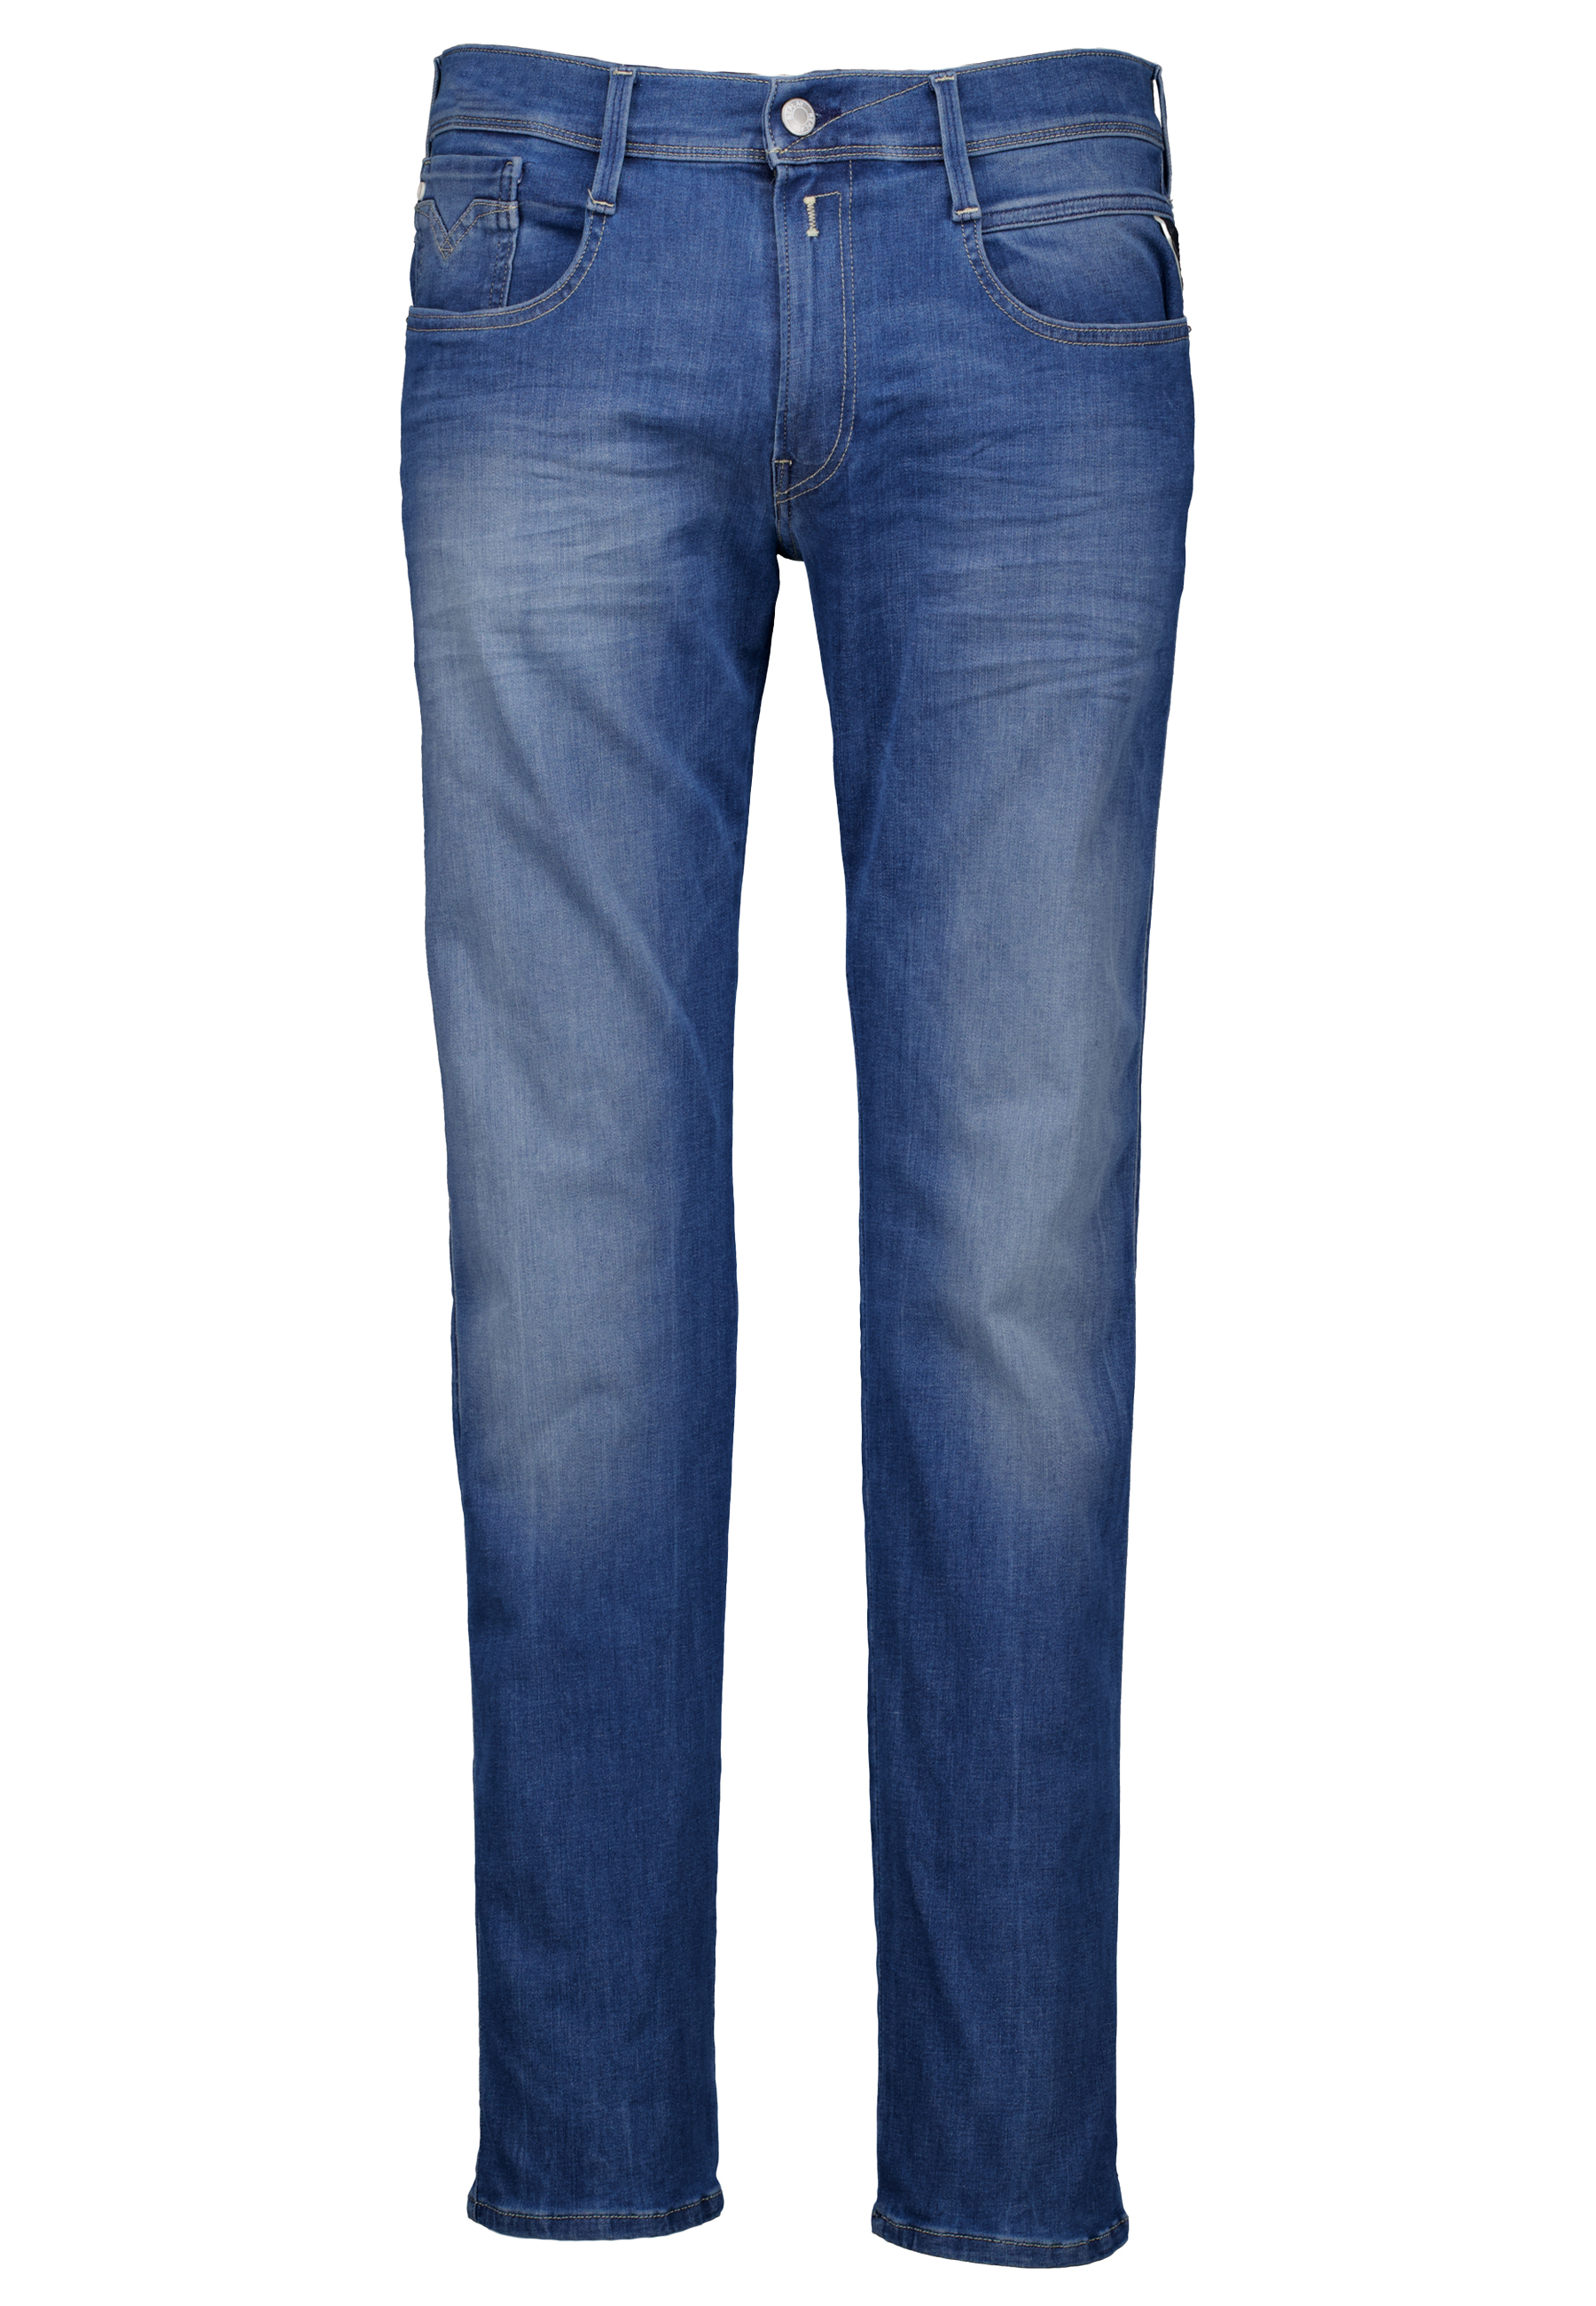 Replay Heren Jeans Blauw maat 33/32